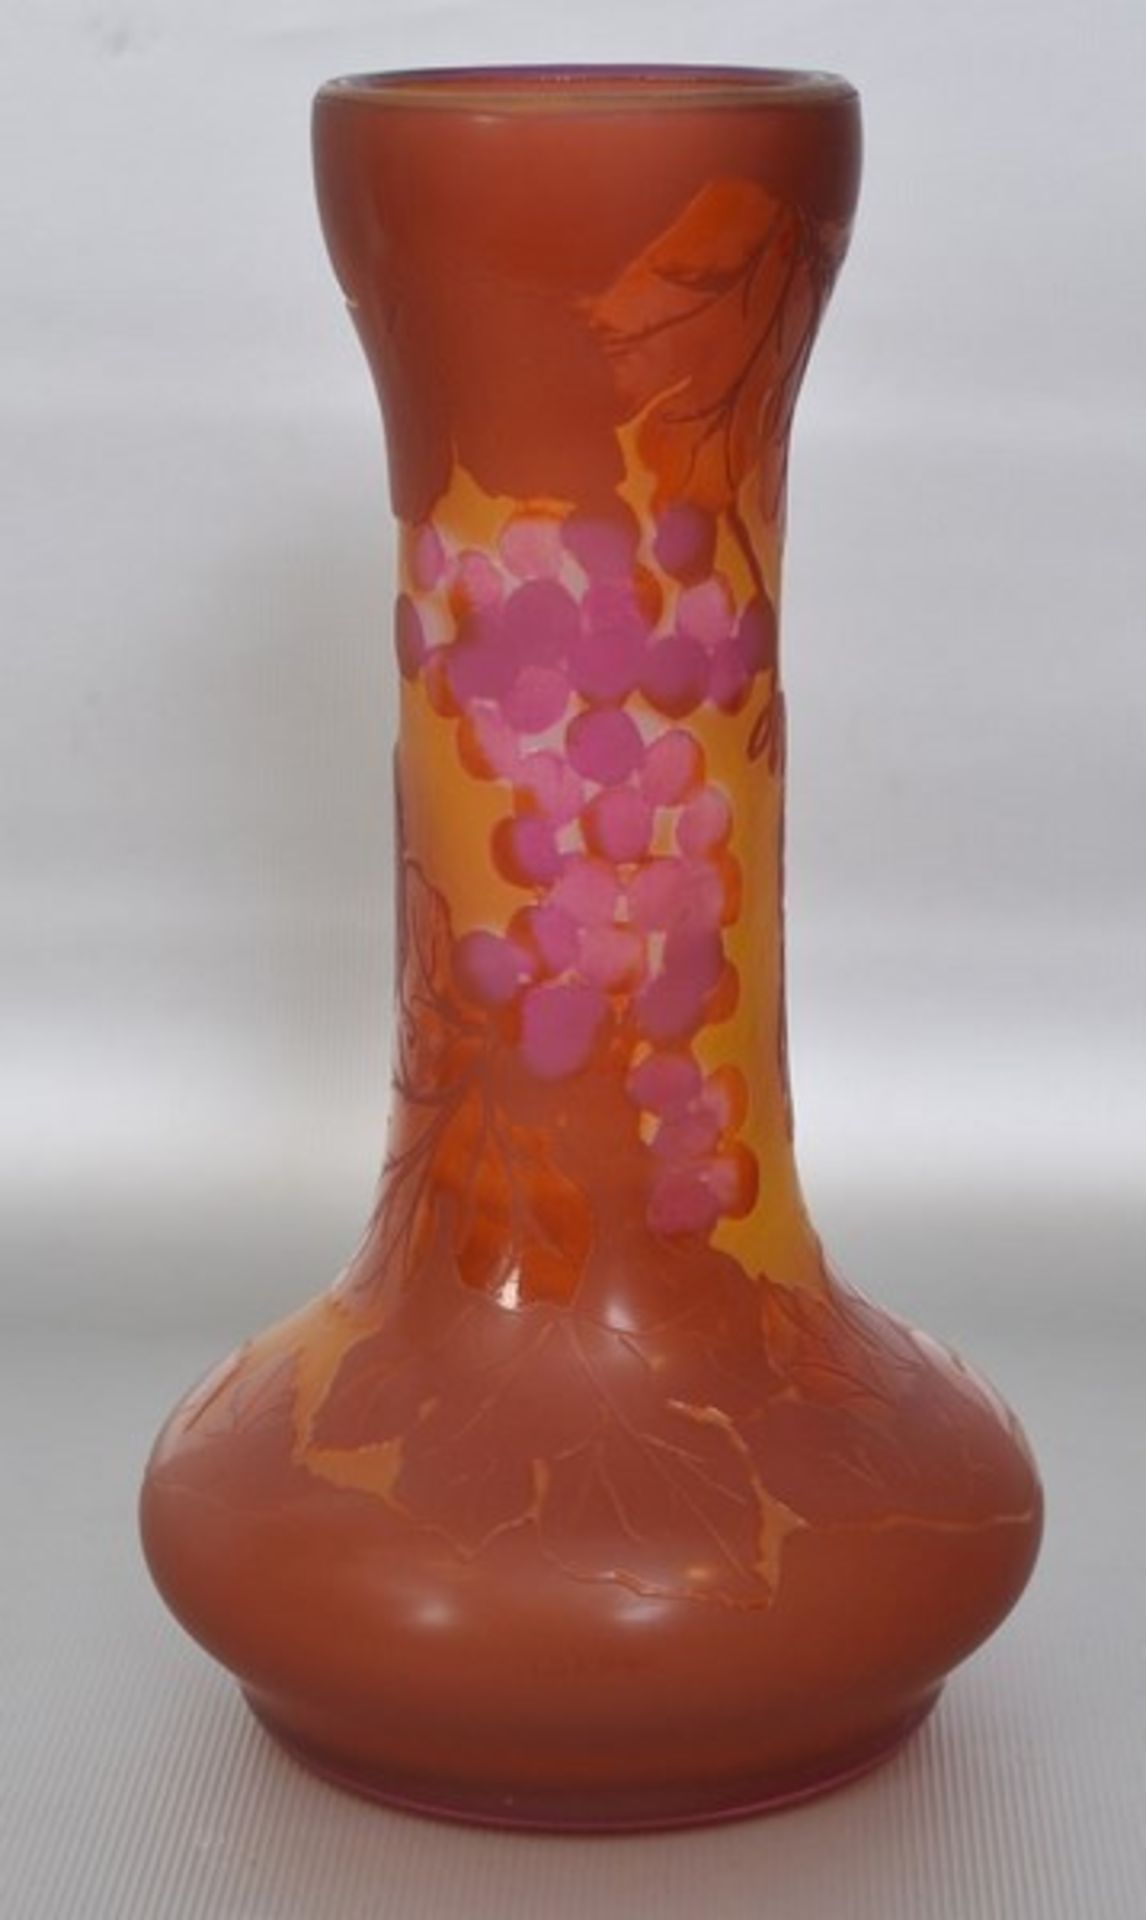 Vase farbl. Glas, mit buntem Überfang, mit Früchten und Blüten, sign. Tipo Gallè, H 18 cm